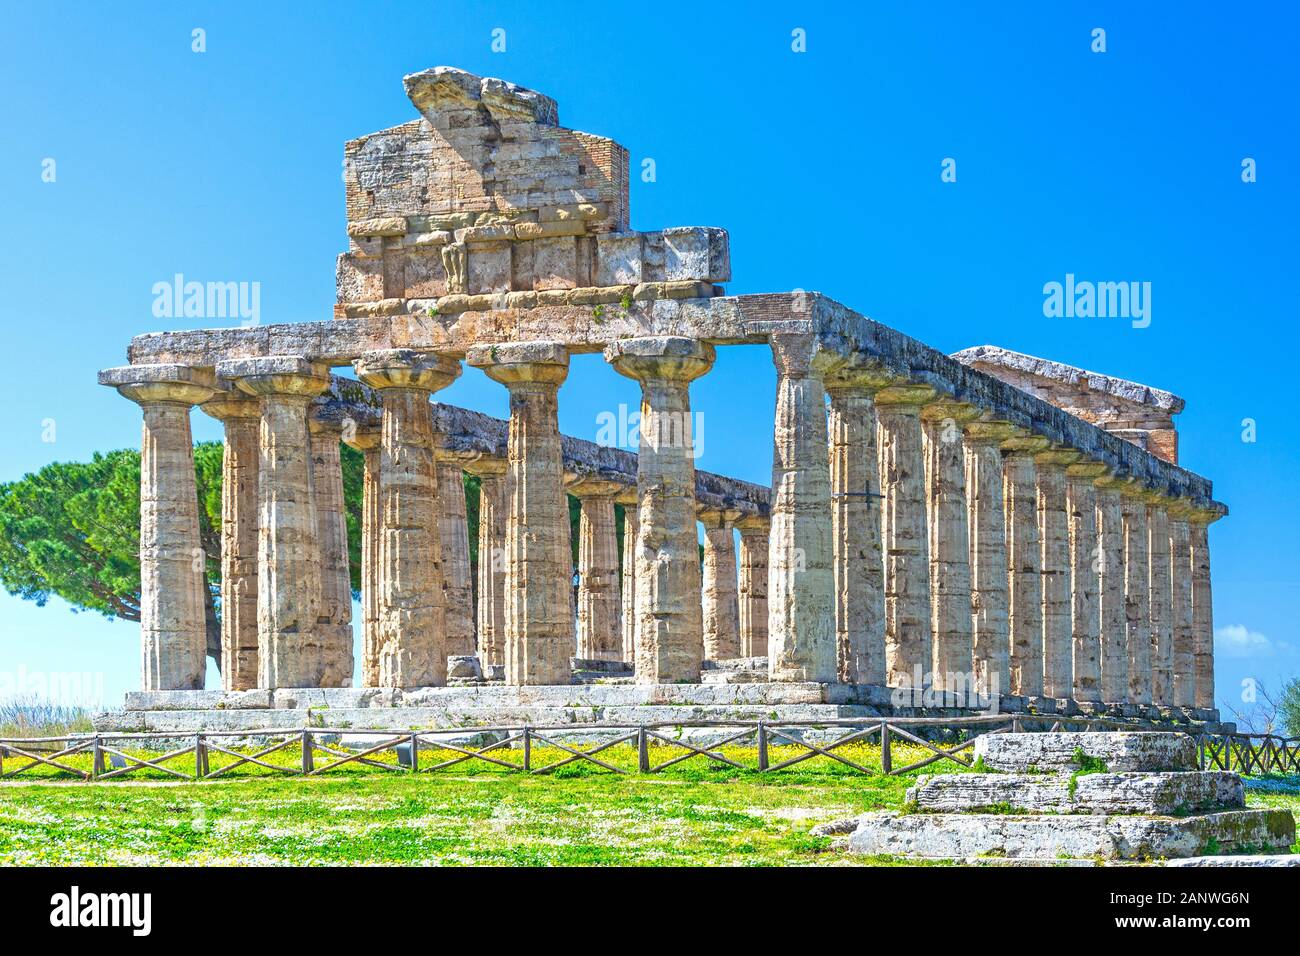 Tempio greco di Atena presso il famoso sito archeologico di Paestum, patrimonio dell'umanità dell'UNESCO, uno dei templi greci più ben conservati del mondo, Foto Stock